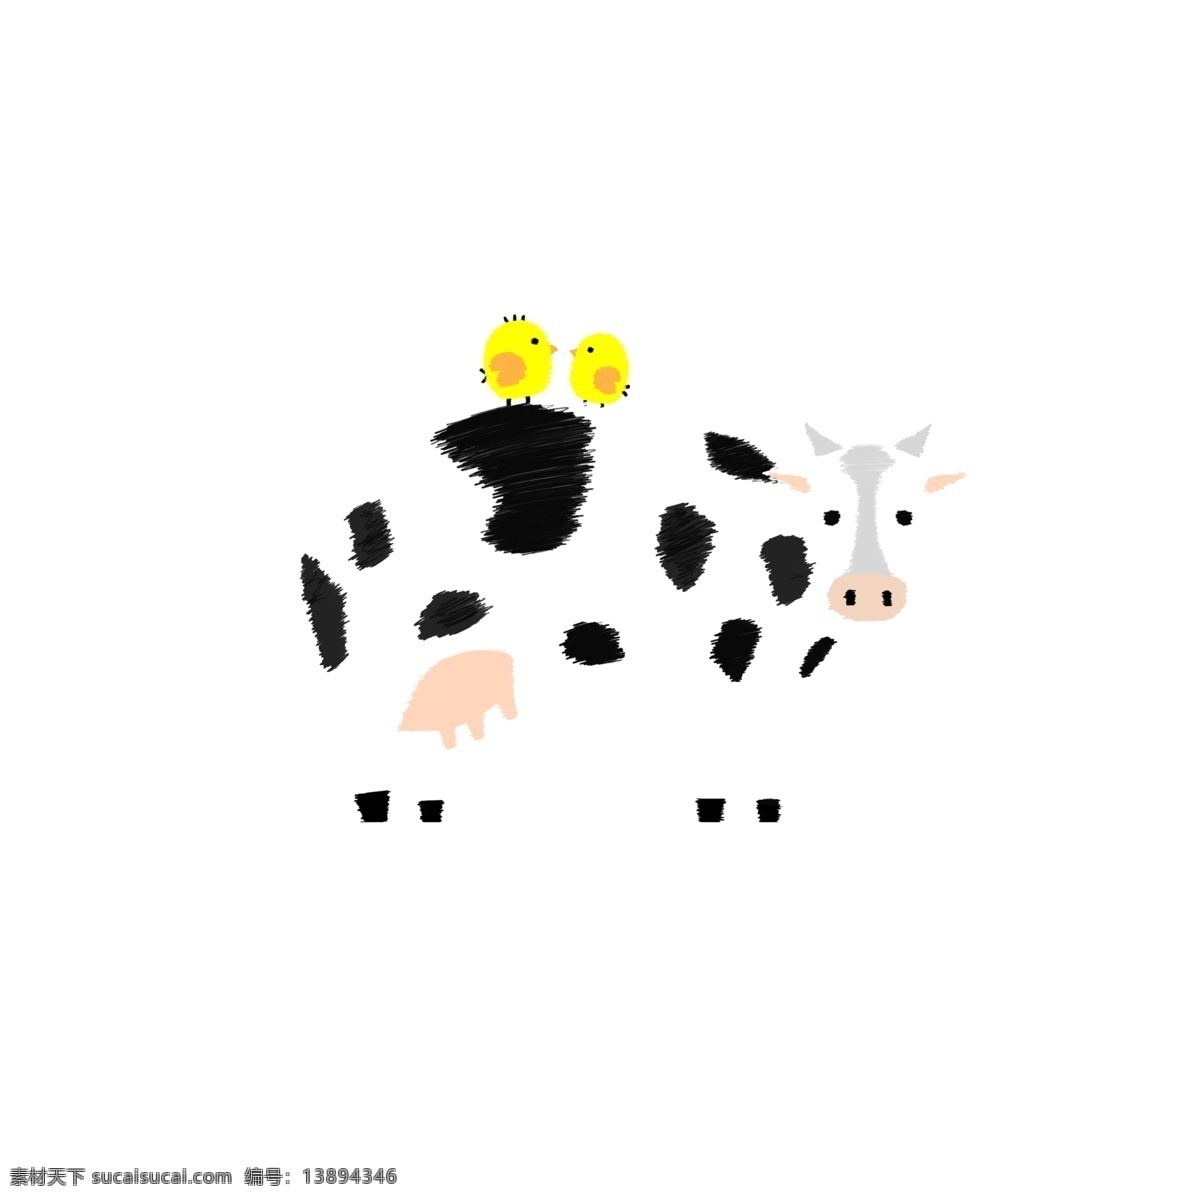 两 只 小鸟 大 奶牛 ps 卡通 手绘 插画 手绘线条 黑白线条 小黄鸟 大奶牛 可爱 免抠图